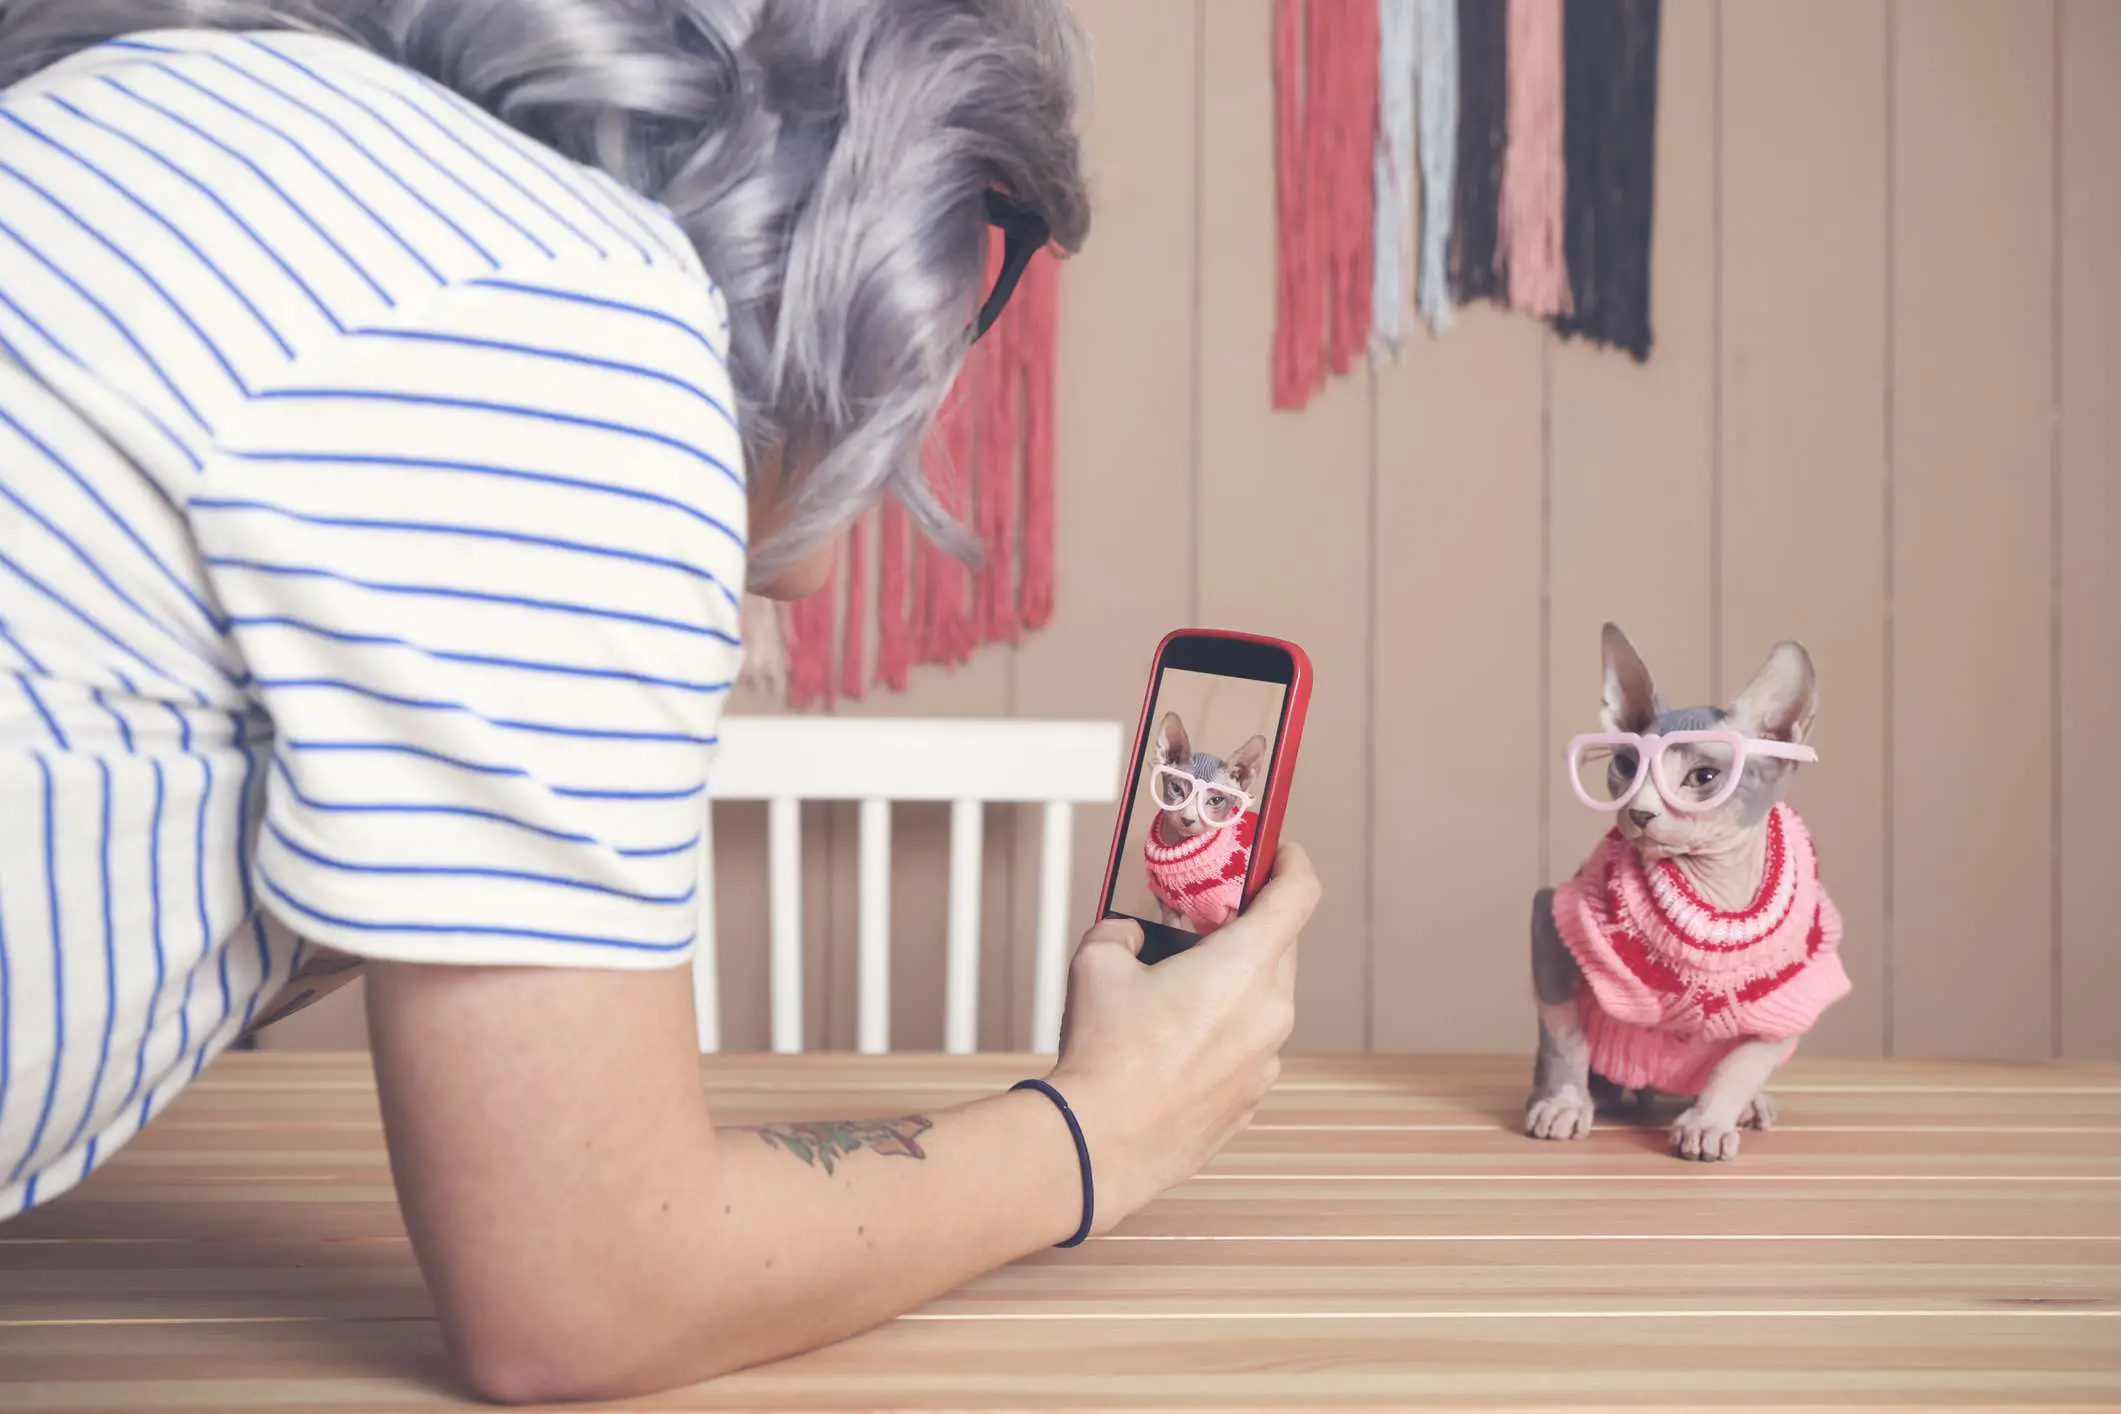 Uma imagem de uma mulher tirando uma foto de um gato vestido com seu smartphone.